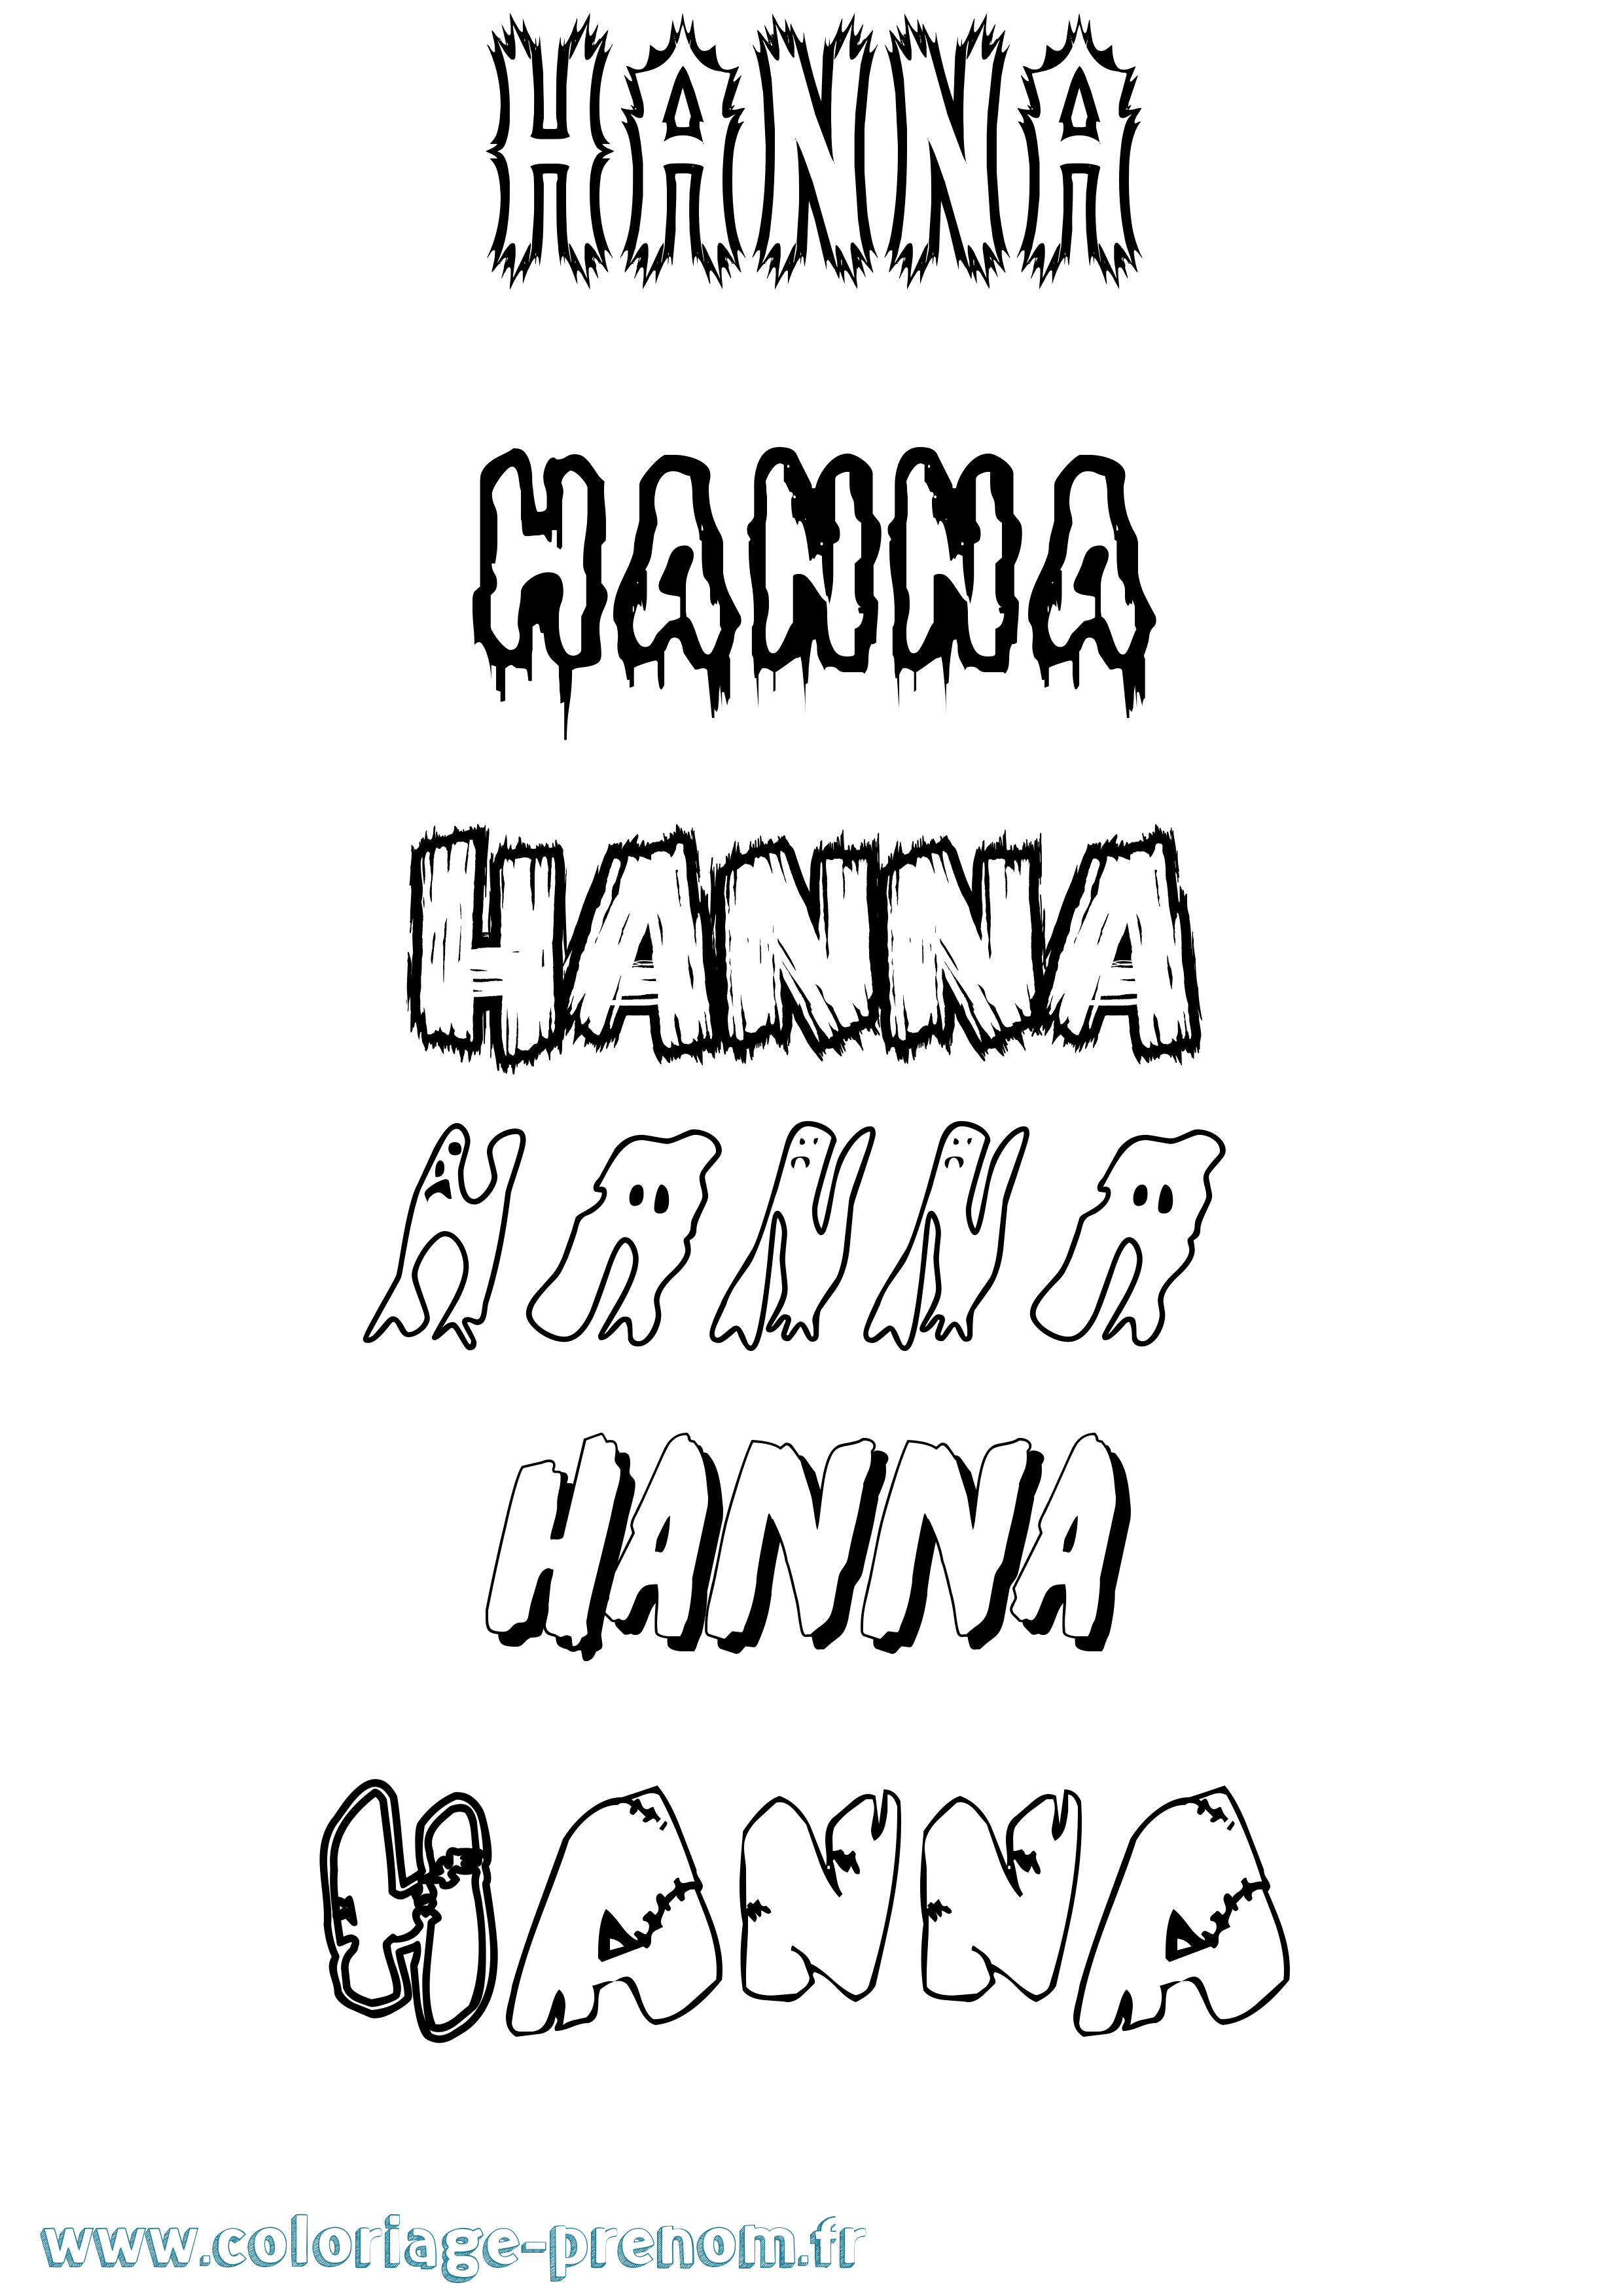 Coloriage prénom Hanna